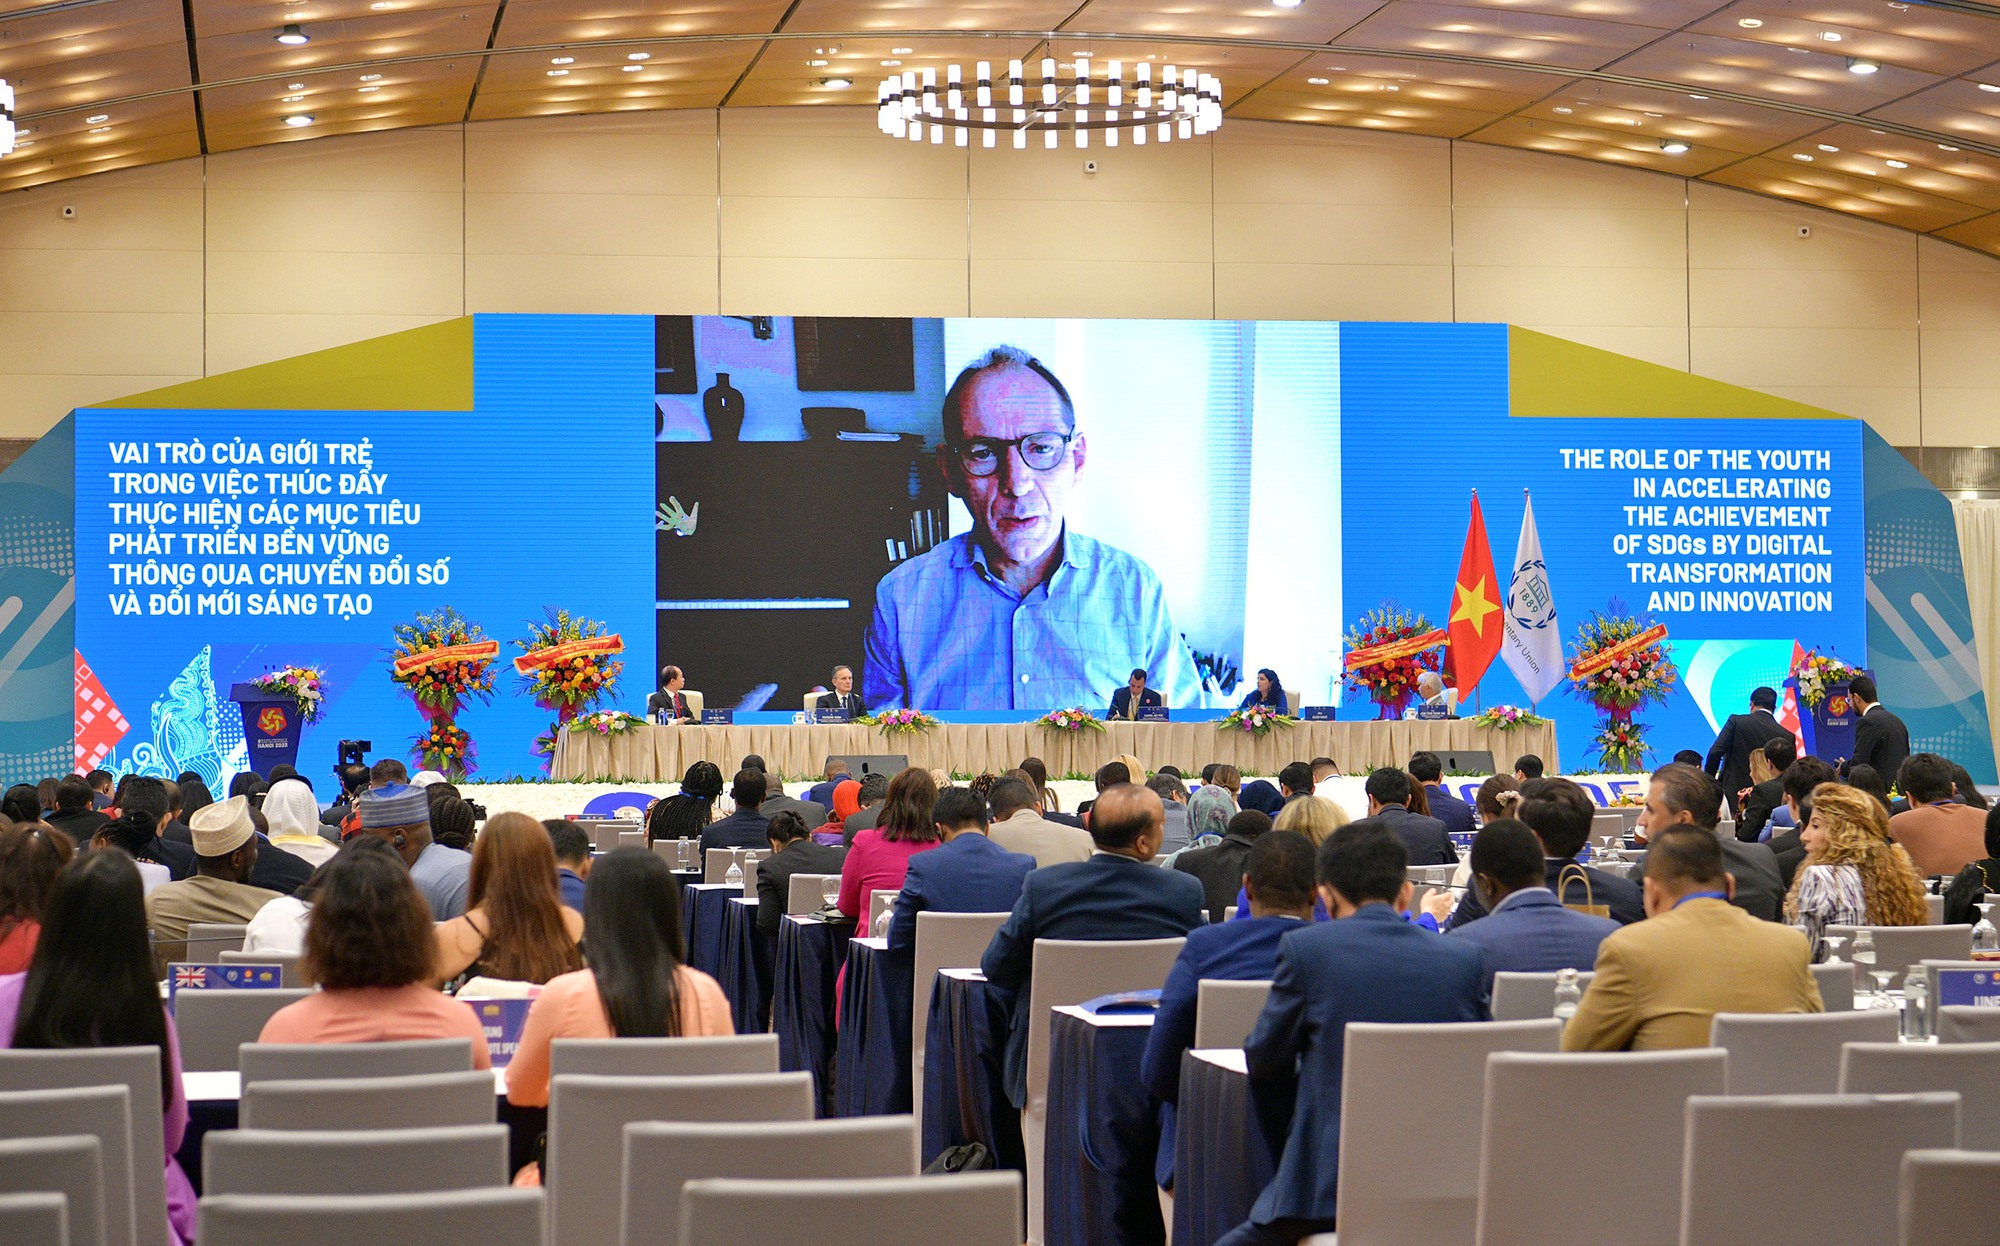 Hội nghị Nghị sĩ trẻ toàn cầu lần thứ 9 đã khẳng định những đóng góp thực chất, hiệu quả của Quốc hội Việt Nam - Ảnh 2.